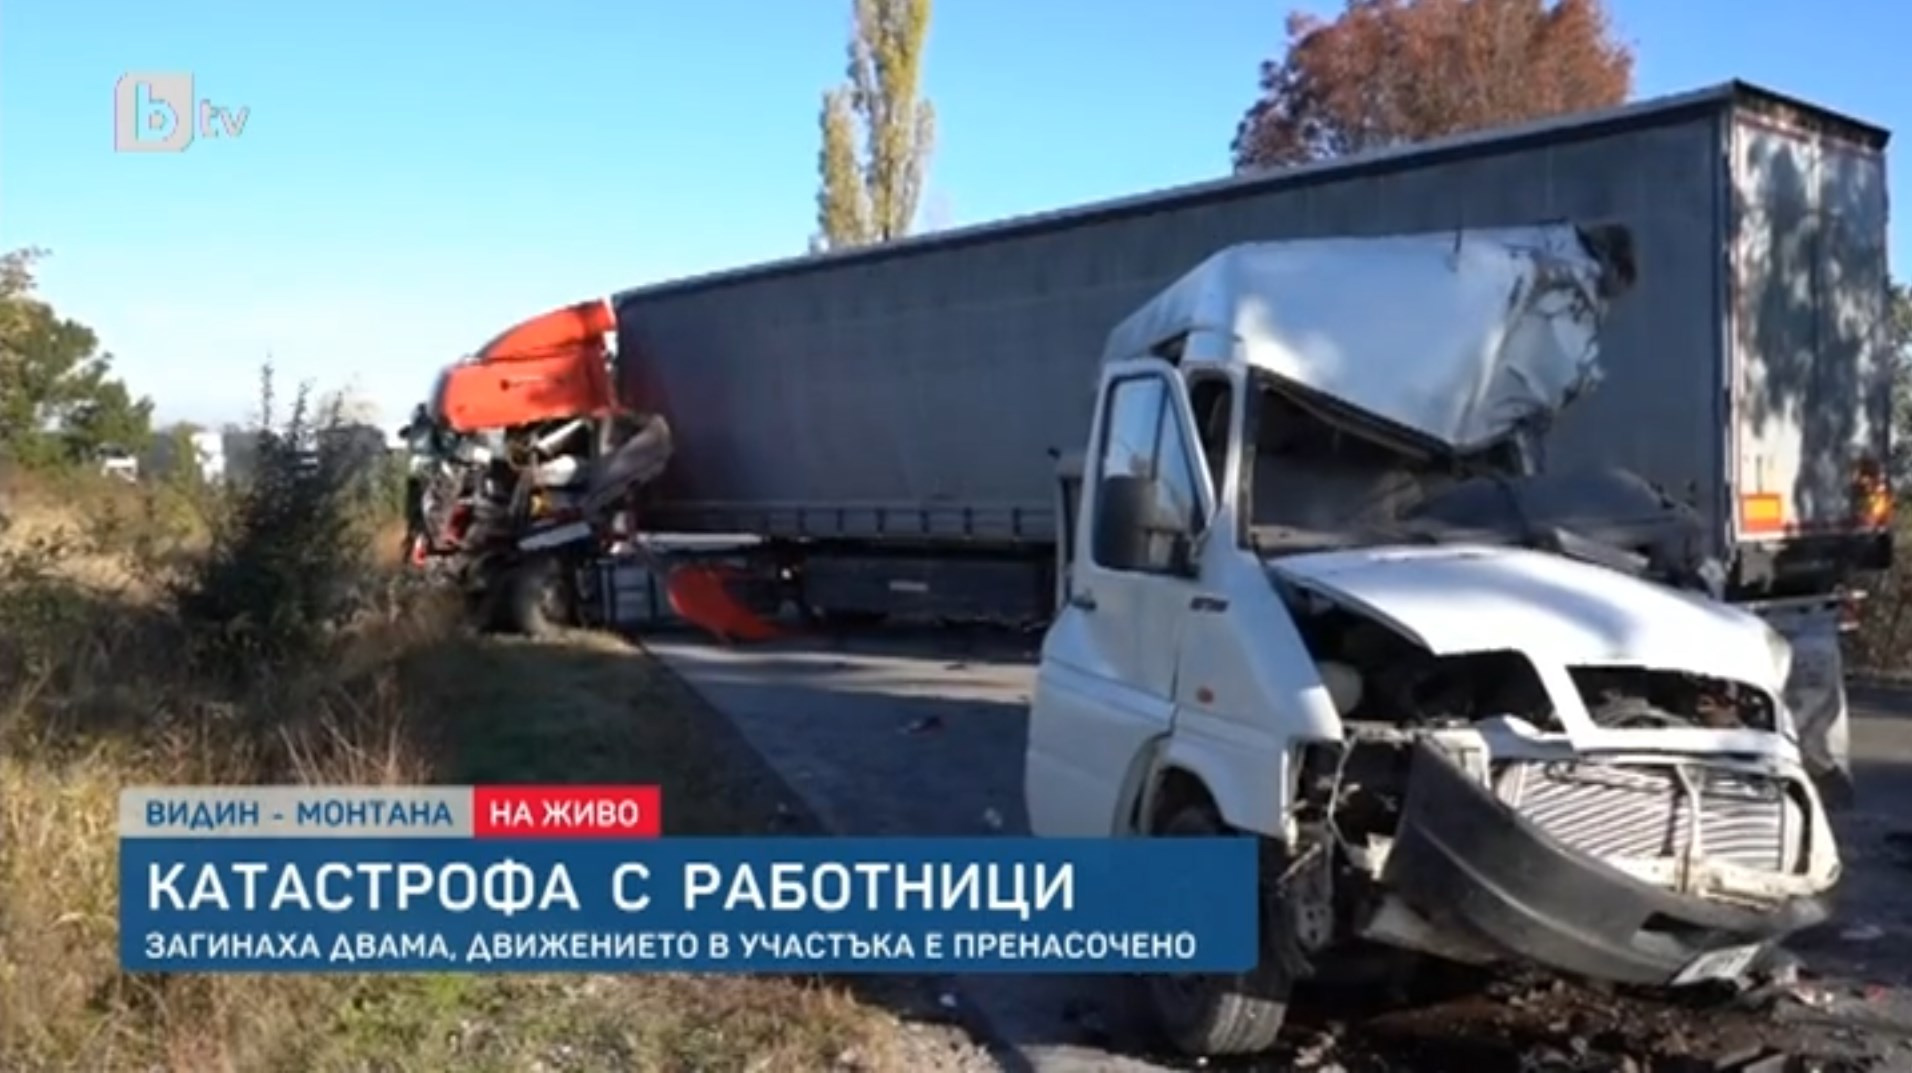 Двое россиян пострадали в смертельном ДТП с микроавтобусом и грузовиком в Болгарии